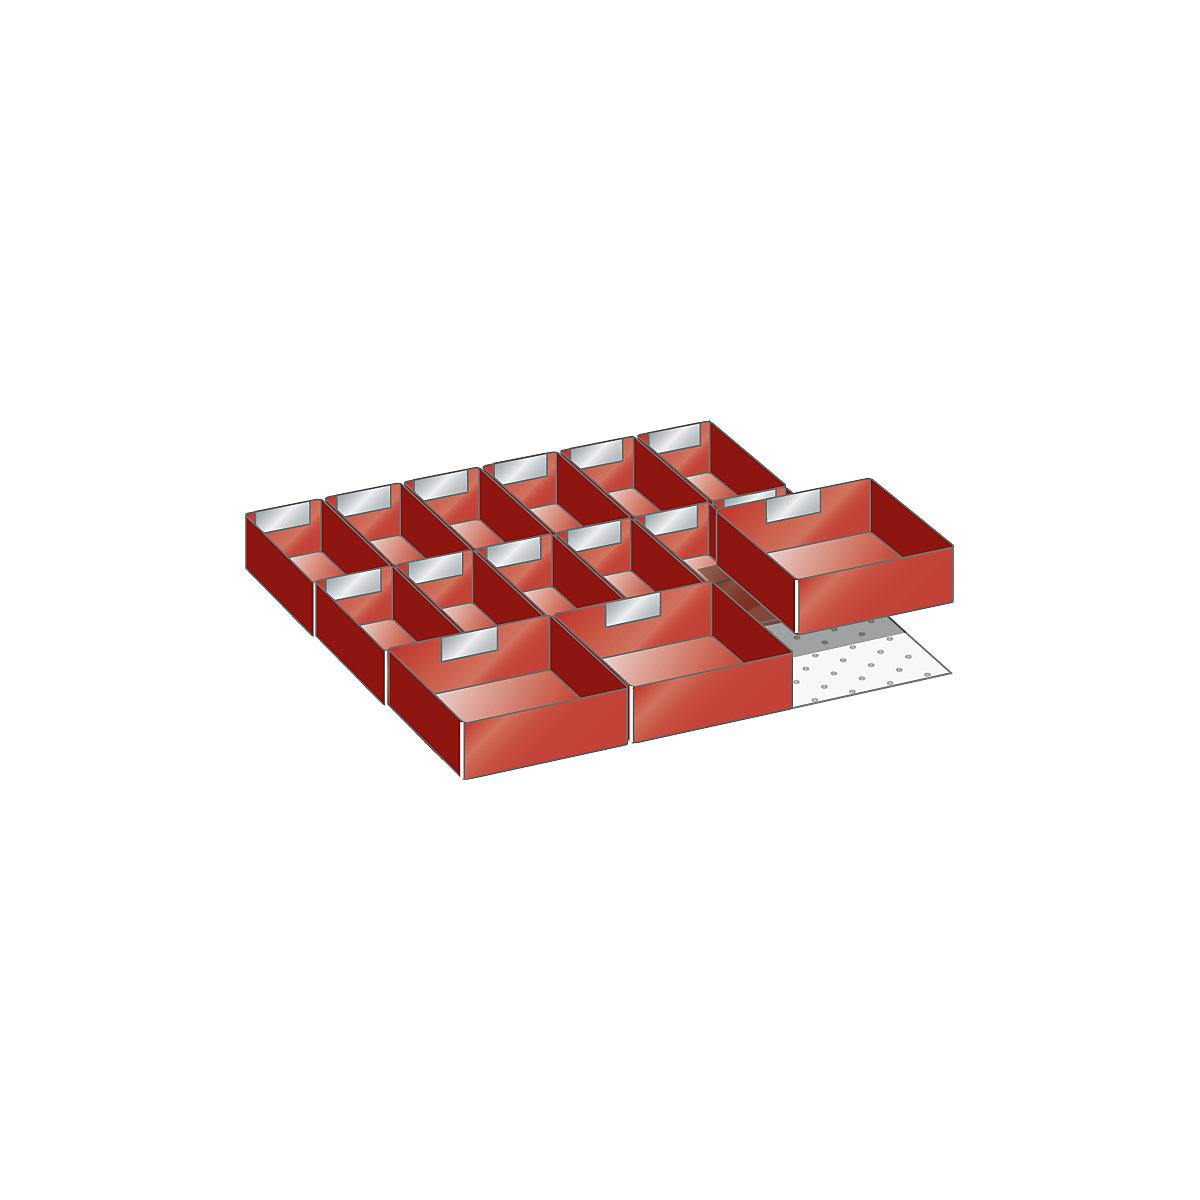 Compartimentation tiroirs – LISTA, jeu de godets de compartimentation, 15 éléments, pour hauteur façade 100 mm-3